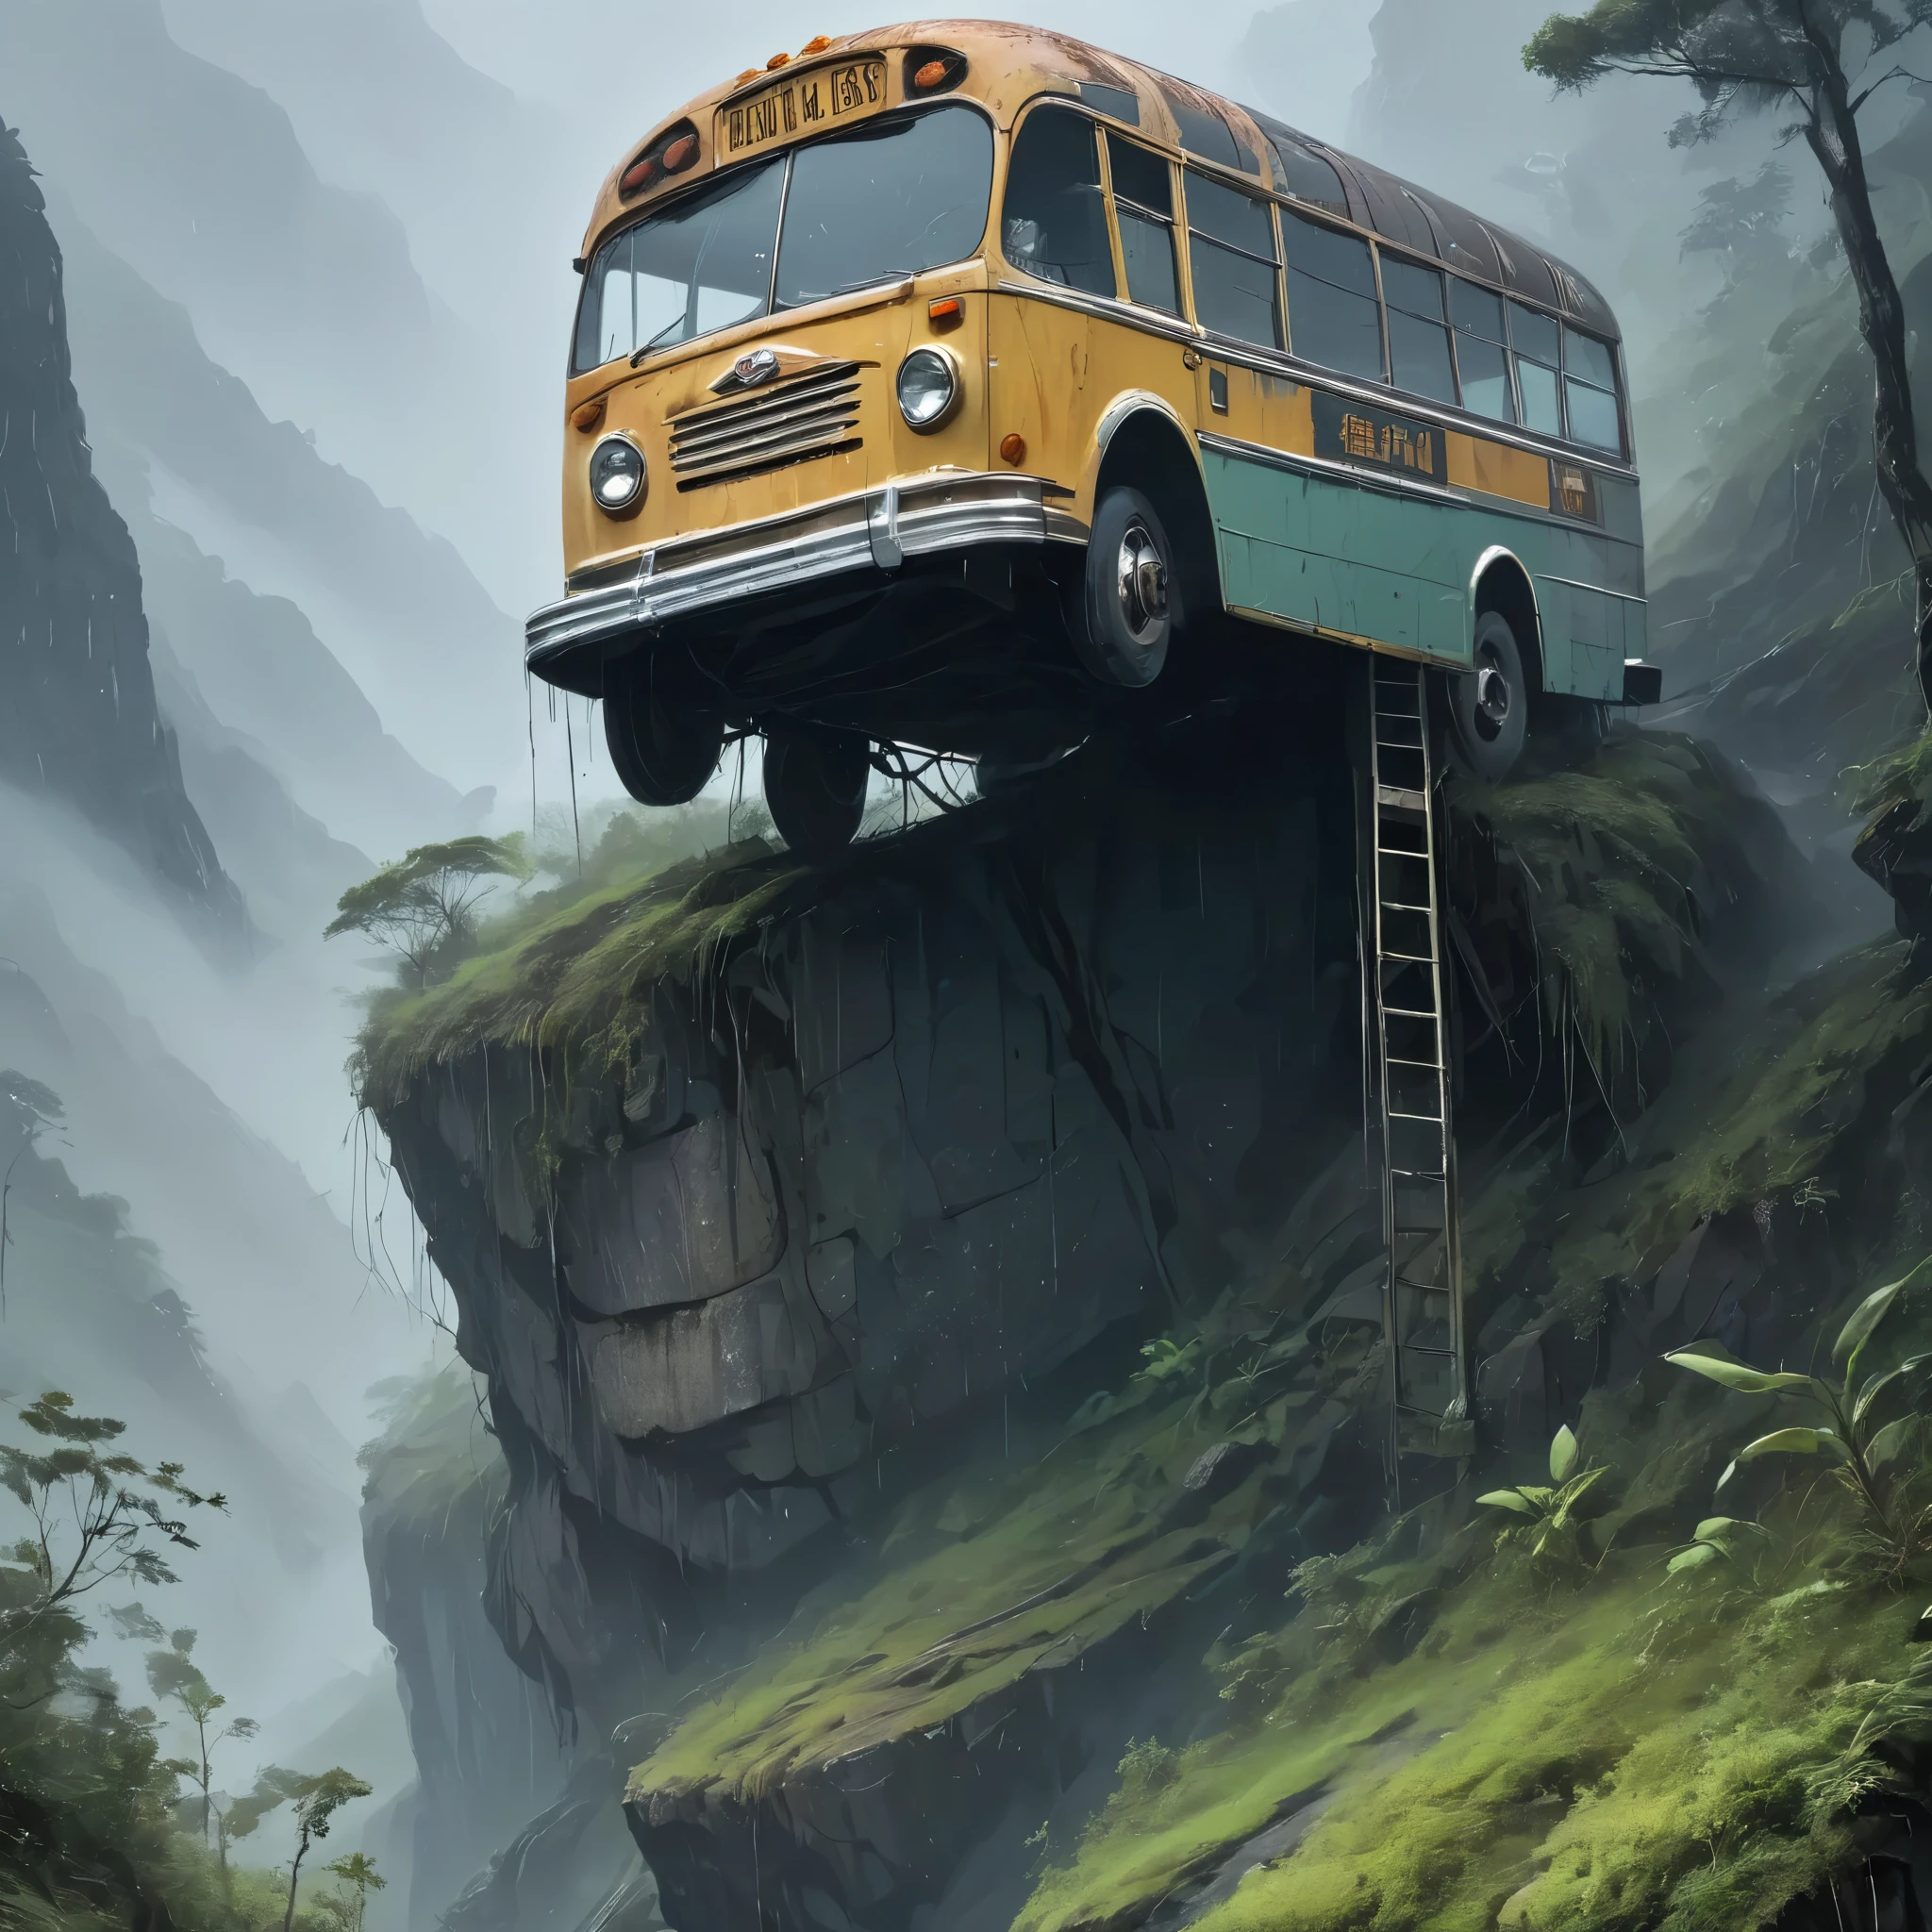 在倾盆大雨和浓雾笼罩下，这张照片捕捉到了一辆破旧不堪的巴士，它摇摇欲坠地停在一座崎岖的山顶上，成为连接两个不同世界的一座不太可能的桥梁